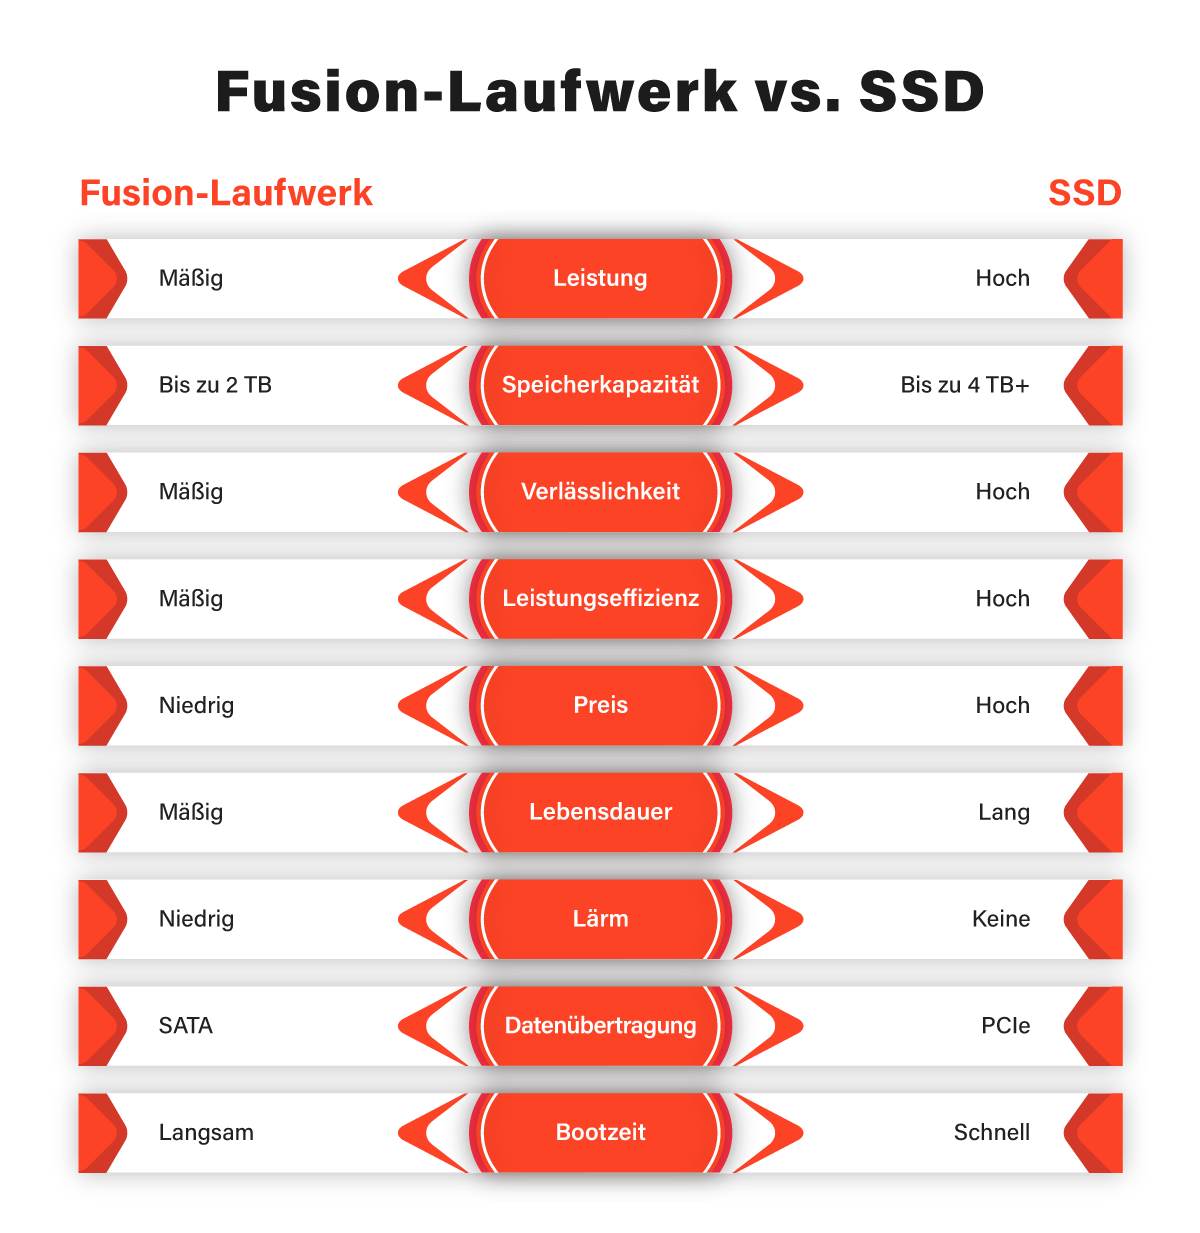 Fusion Laufwerk vs SSD